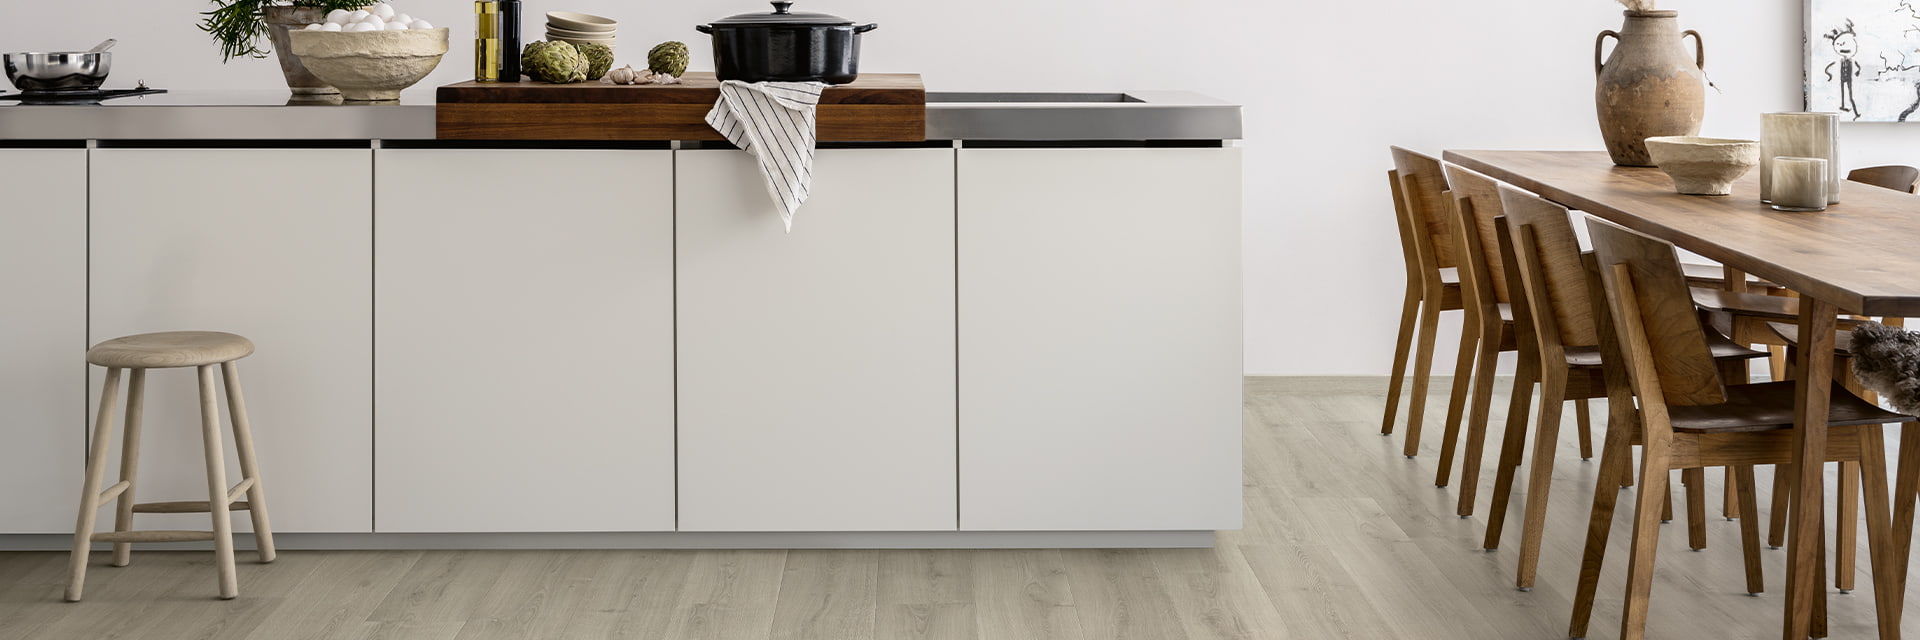 Hvitt kjøkken med grått laminatgulv og brunt kjøkkenbord